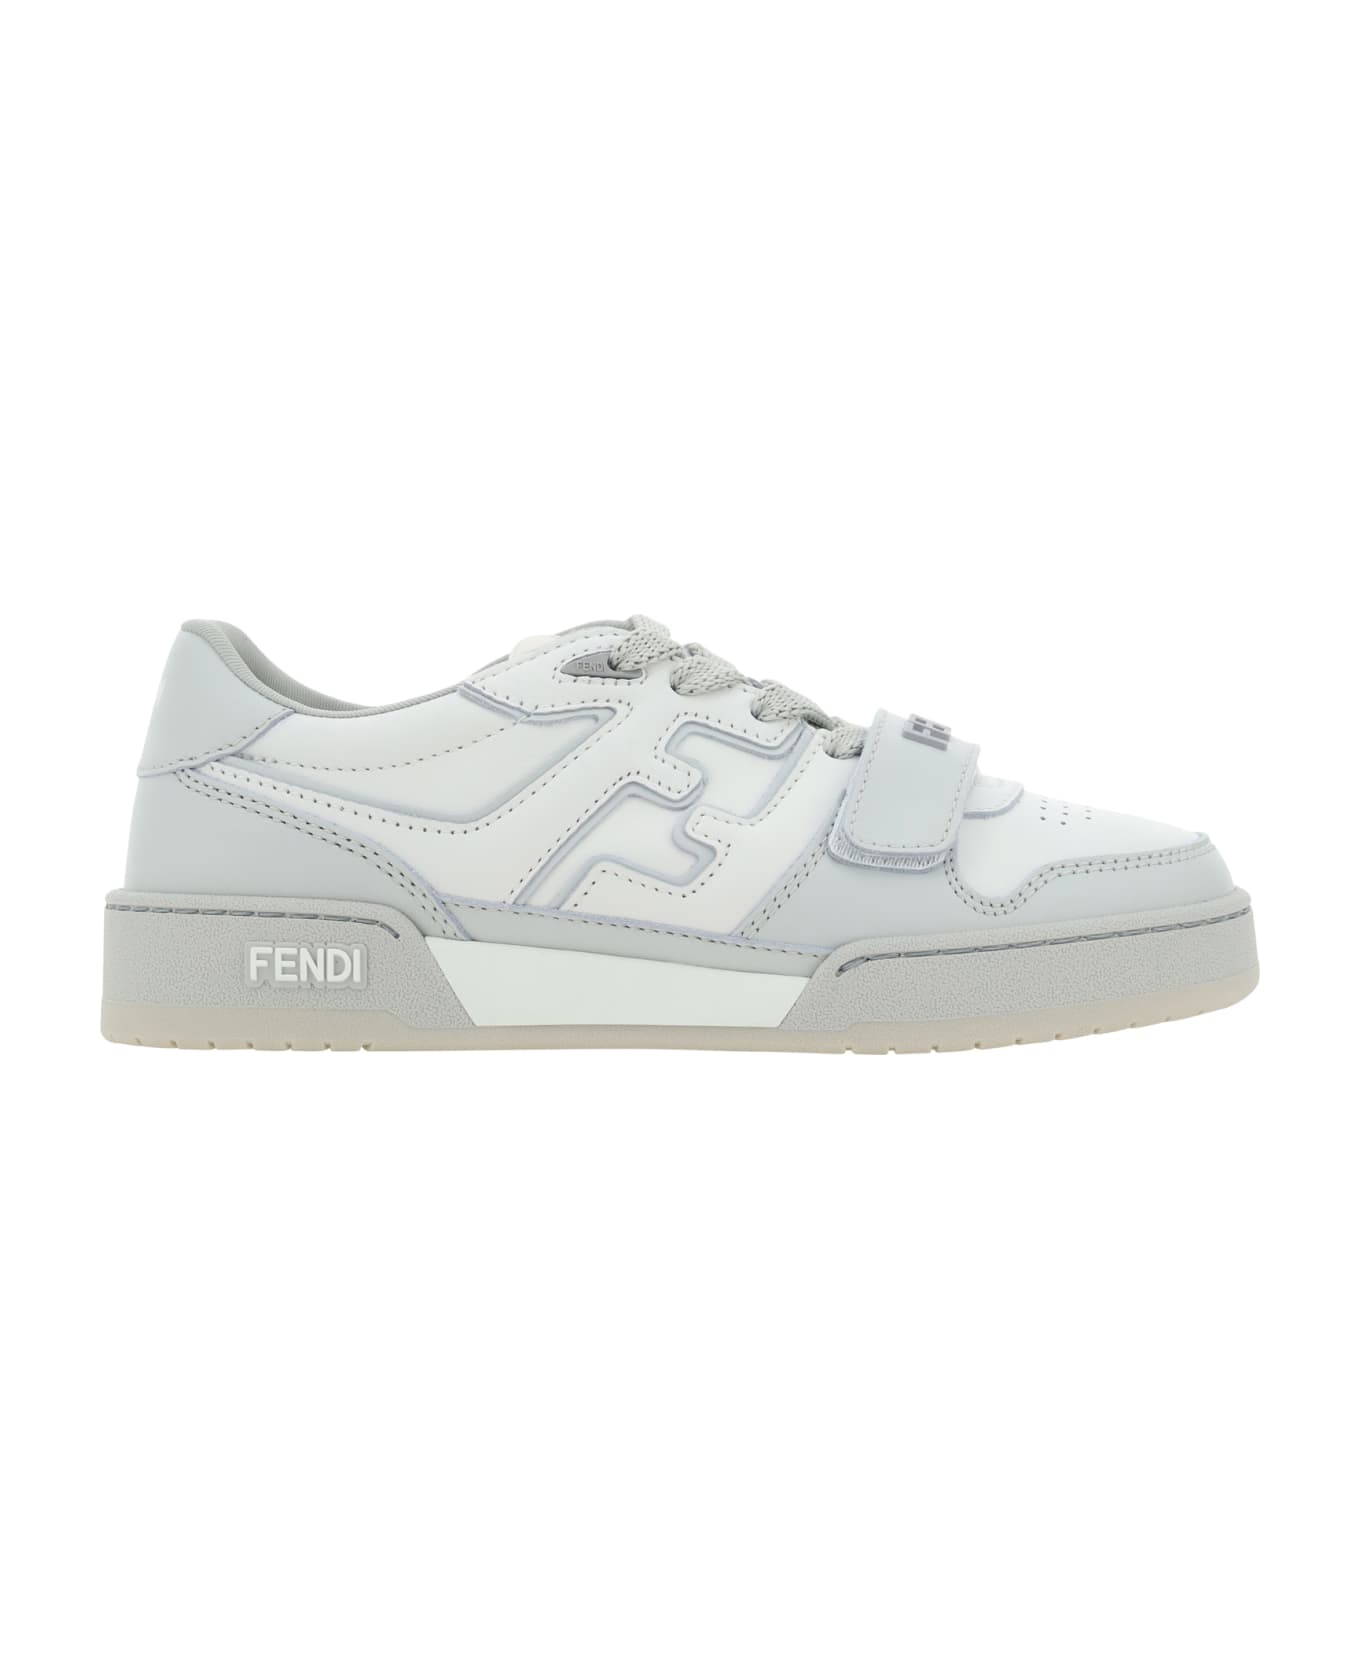 Fendi Match Sneakers - Grigio/white/grigio スニーカー